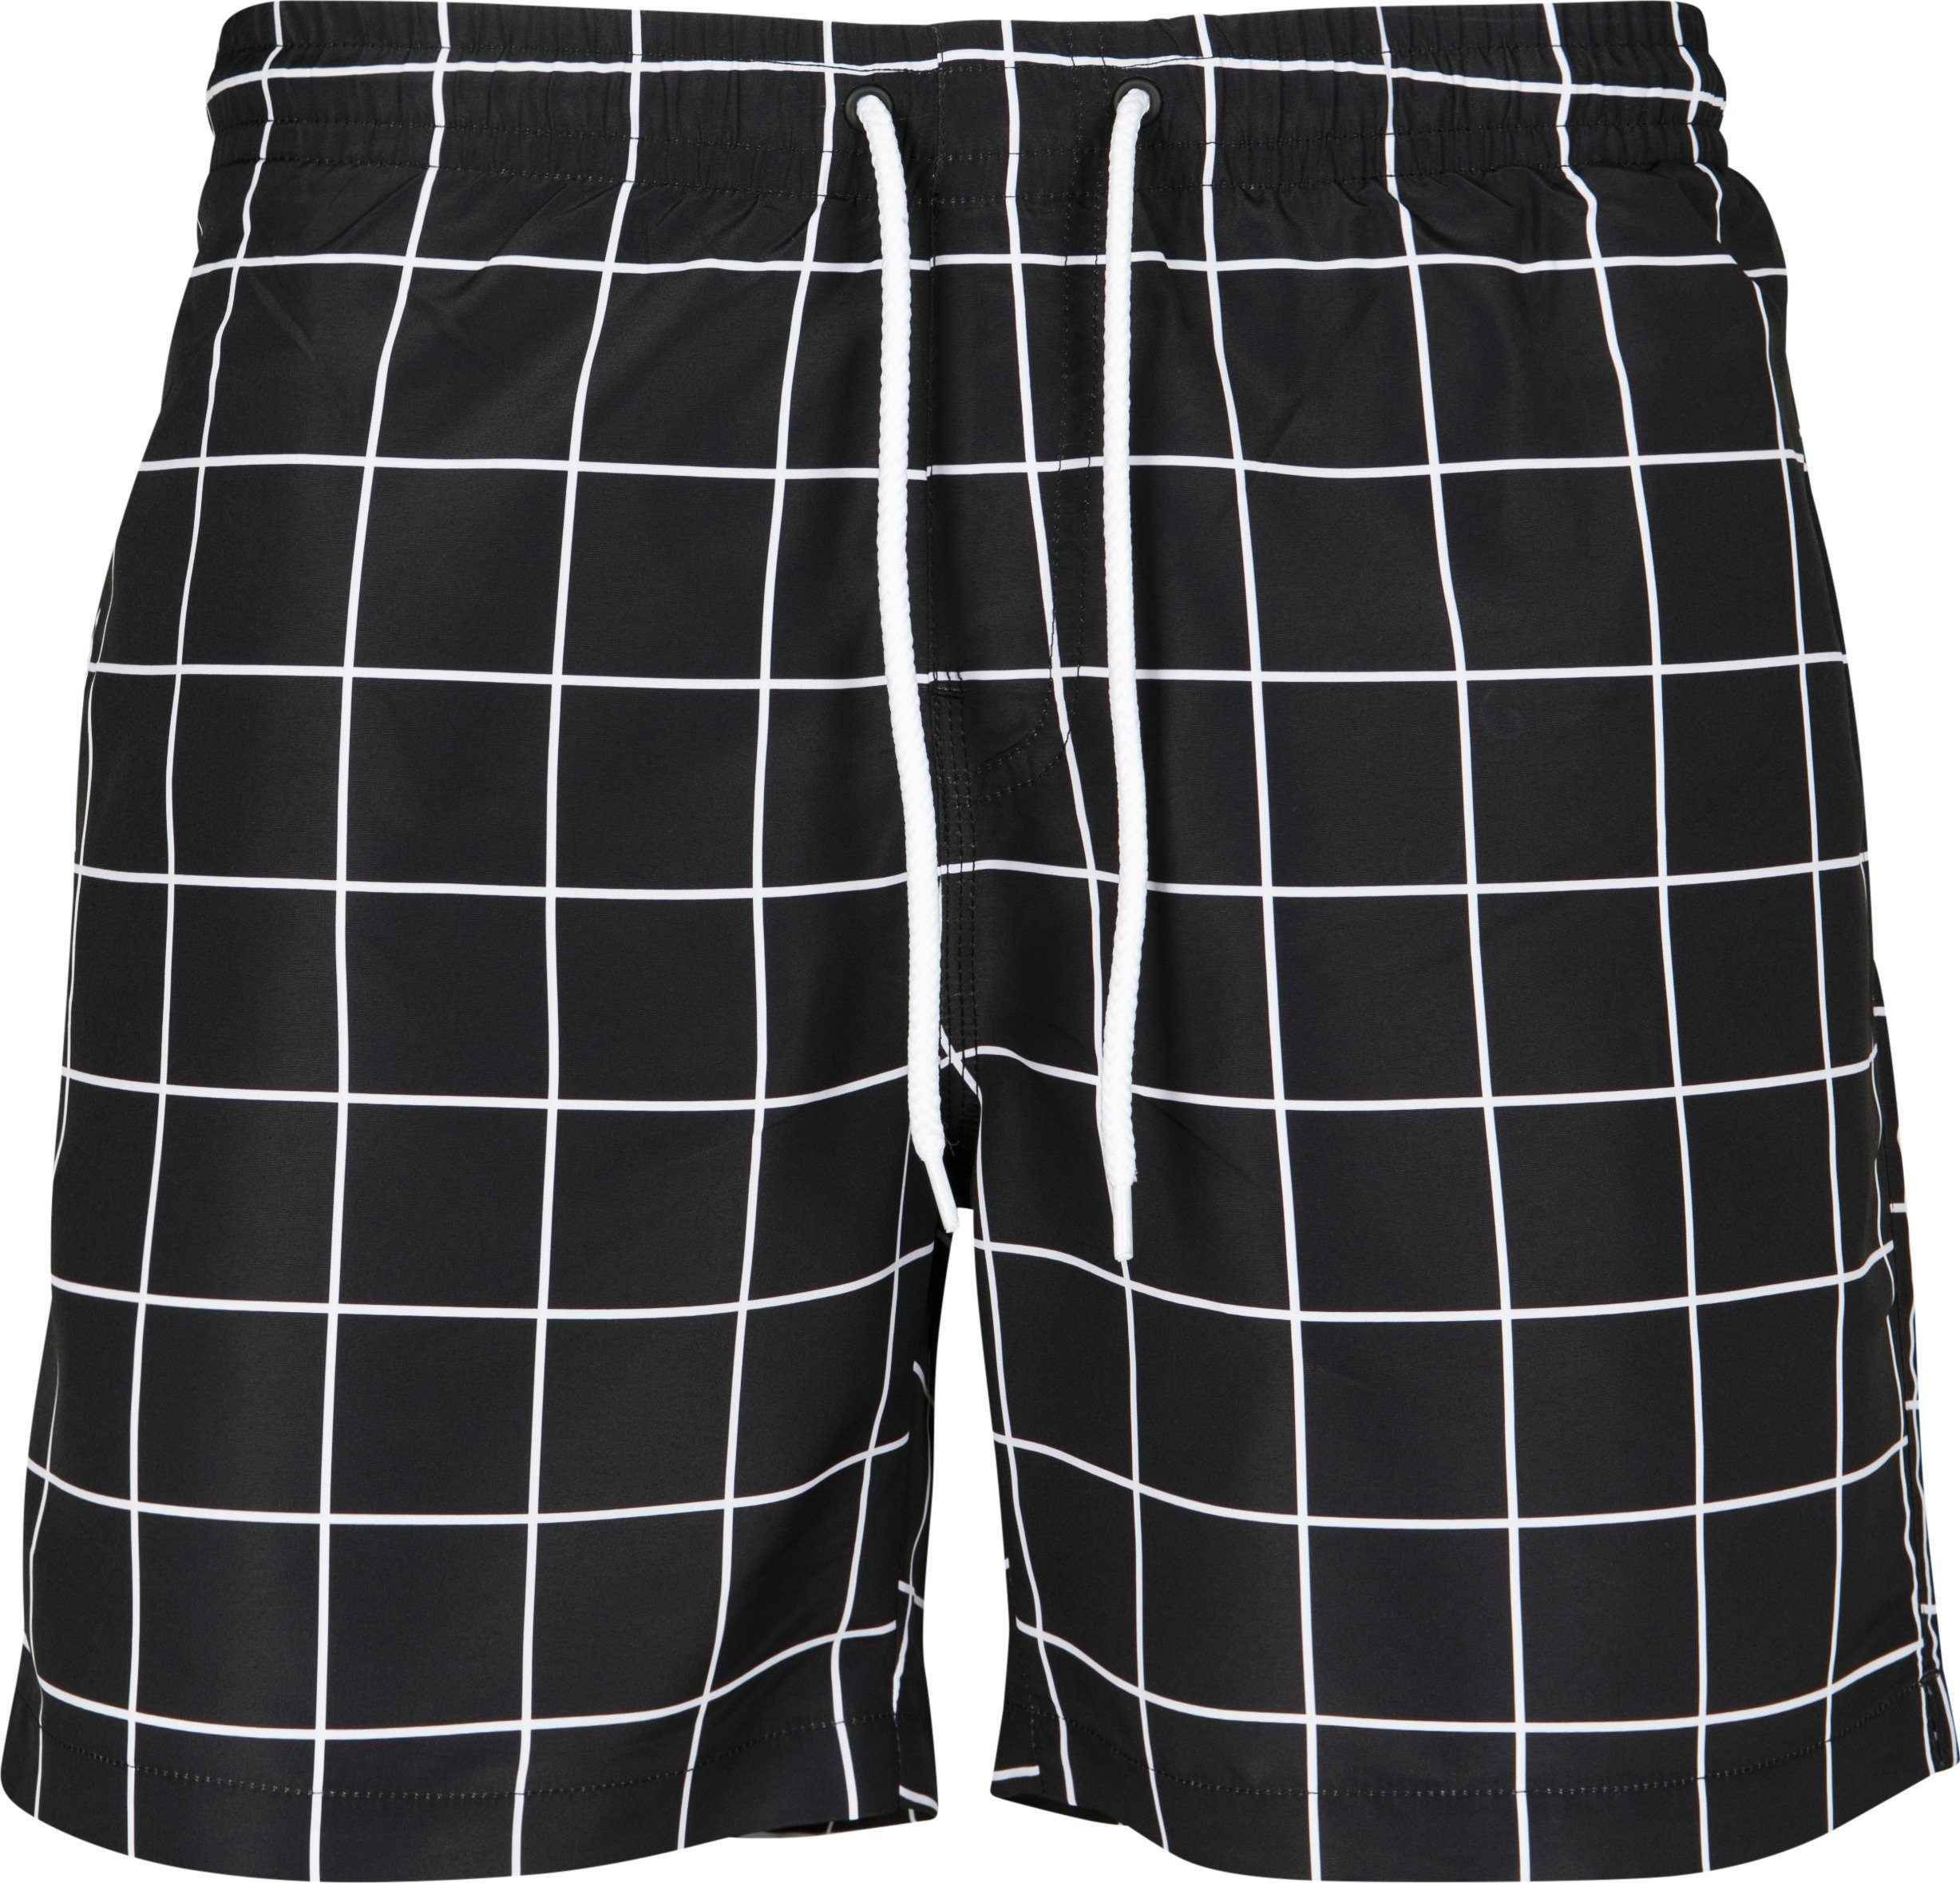 Hohe Qualität URBAN CLASSICS Badeshorts black/white Swim Check Herren Check TB2677 Shorts